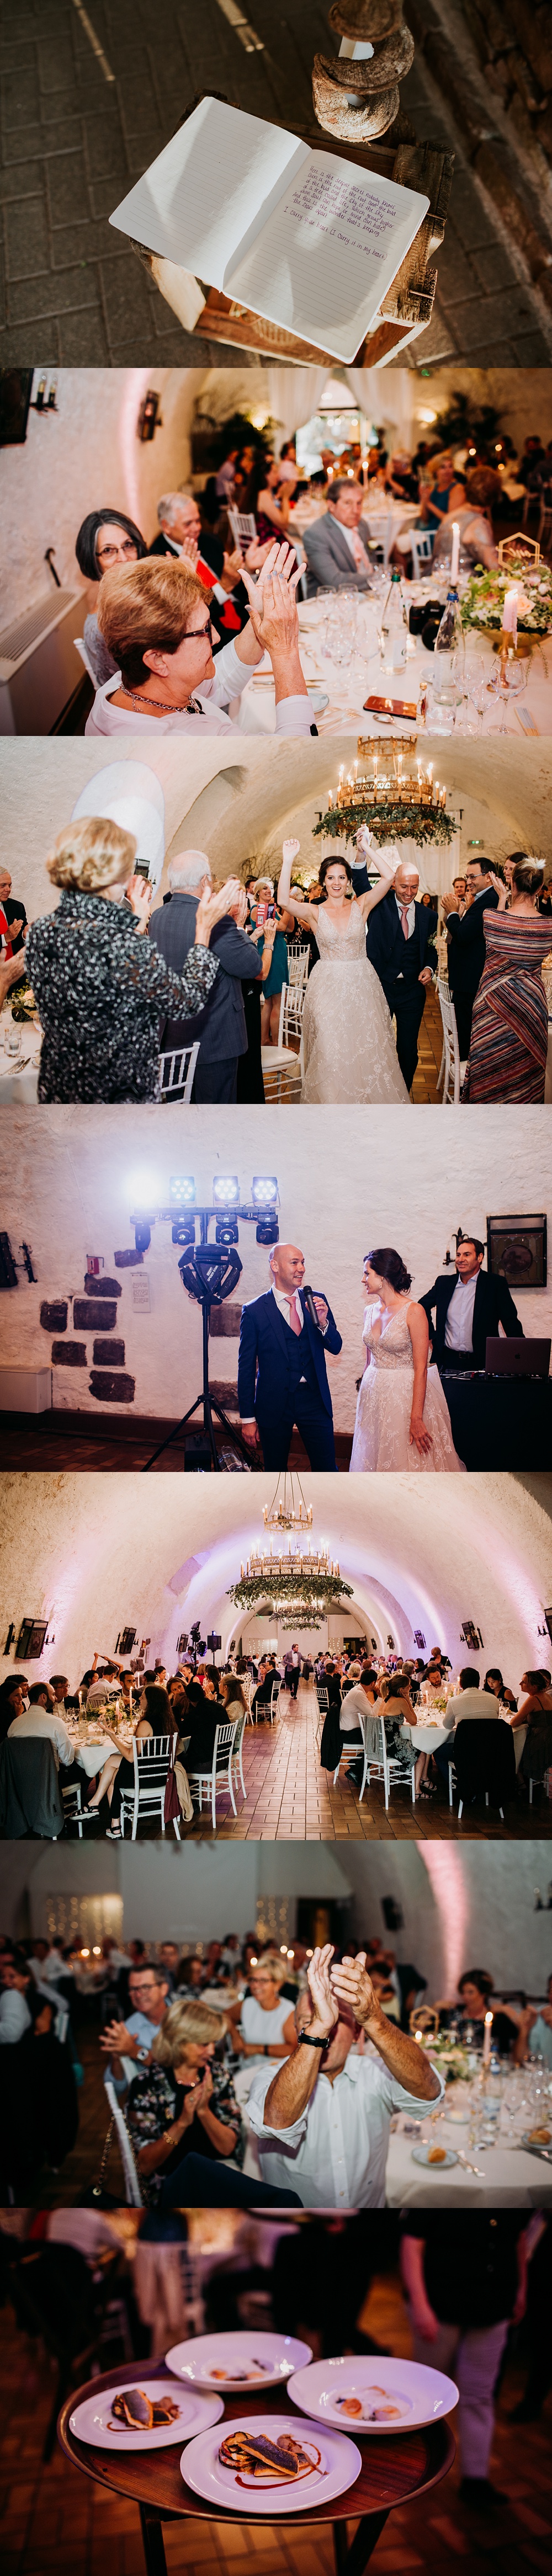 Photographe mariage château d'Isenbourg Alsace